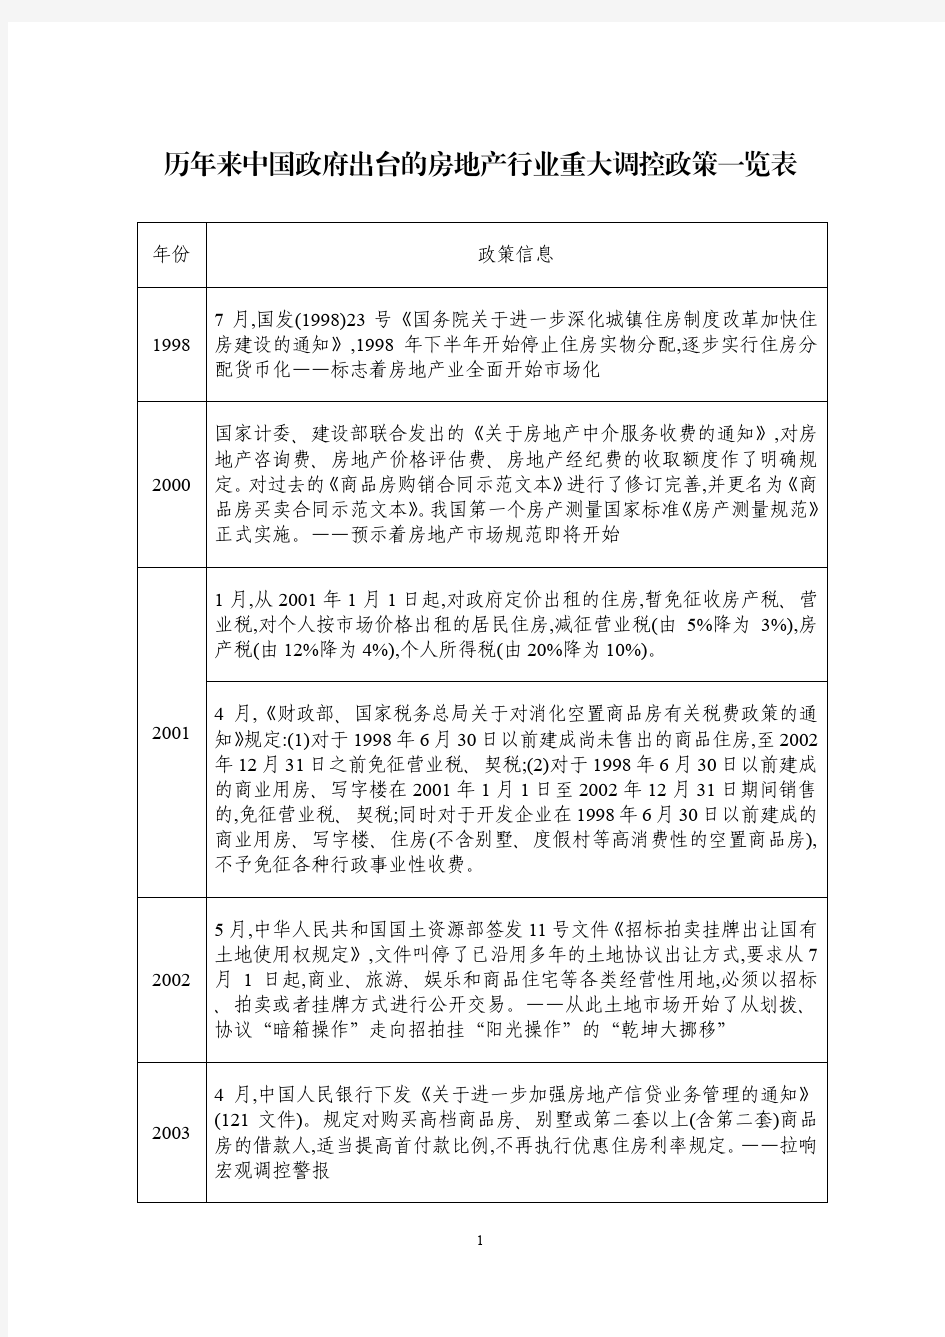 历年来中国政府出台的房地产行业重大调控政策一览表